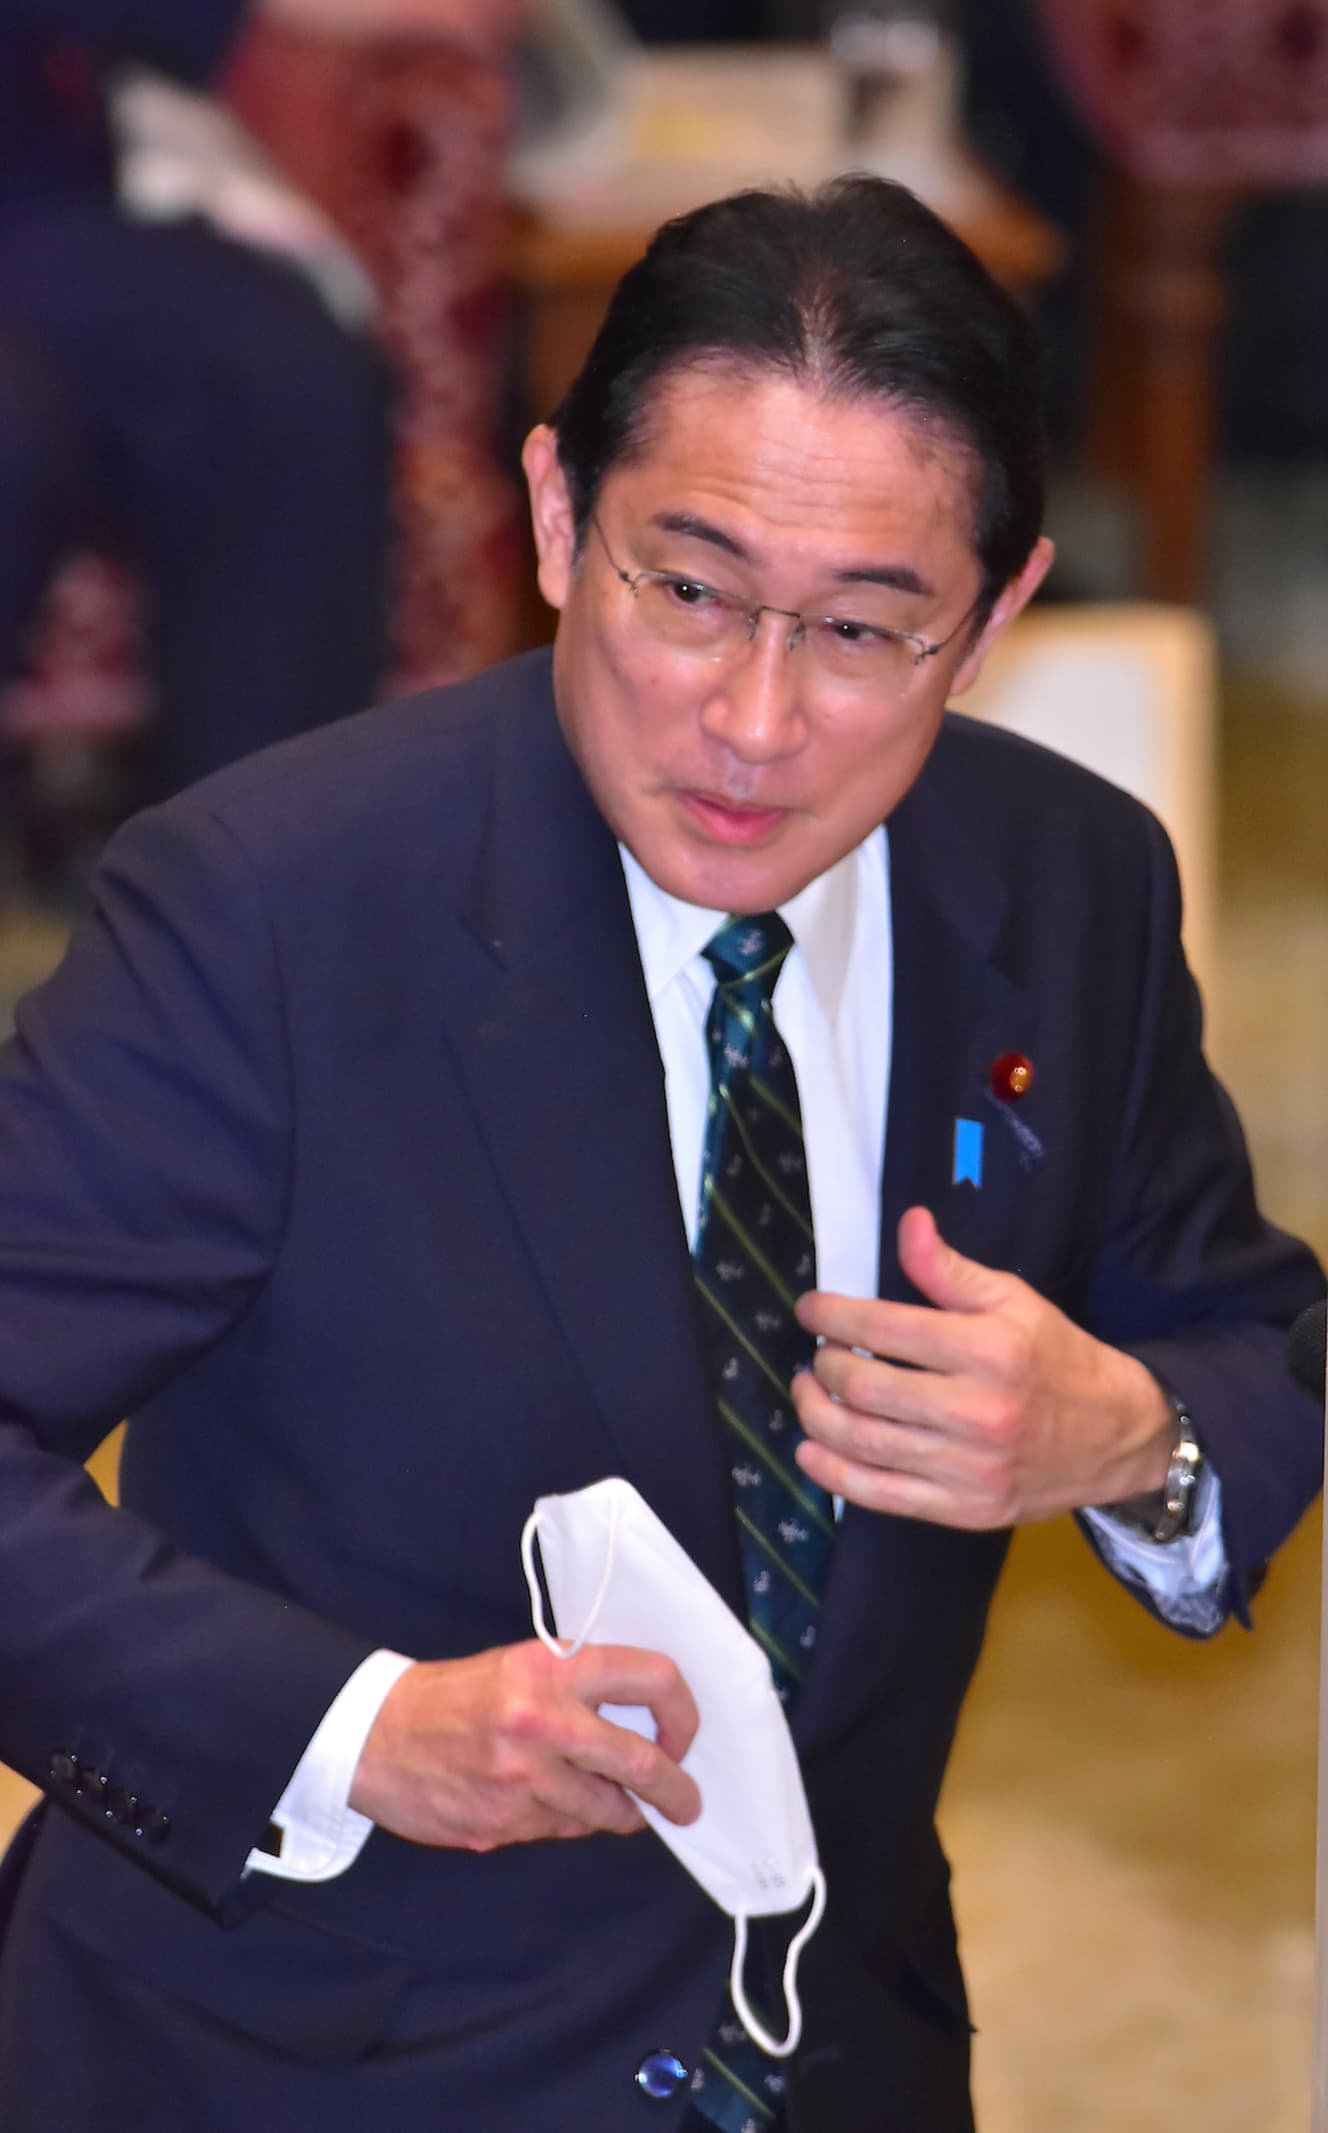 「ライドシェア」を推し進める岸田首相。しかし、党内からもさまざまな問題点が指摘されている